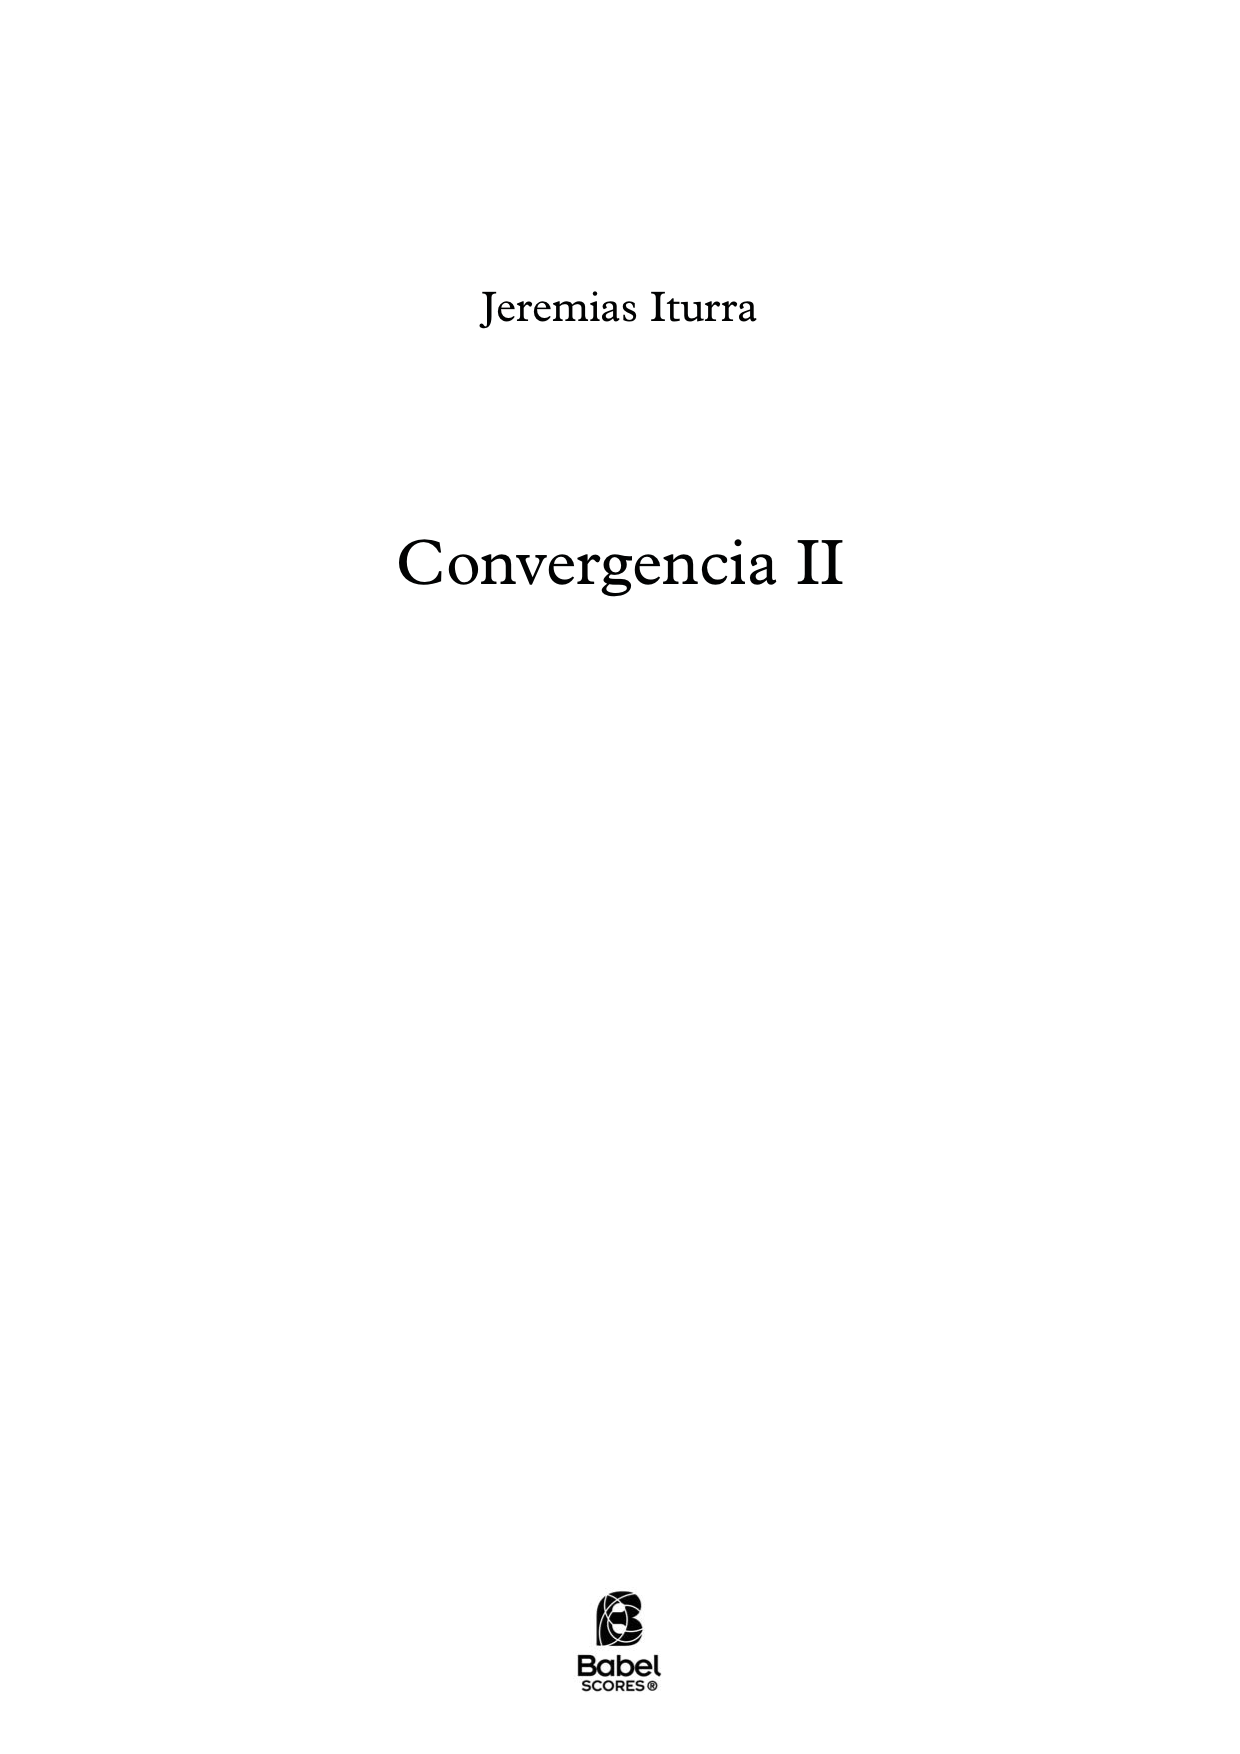 Convergencia II A4 z 2 109 01